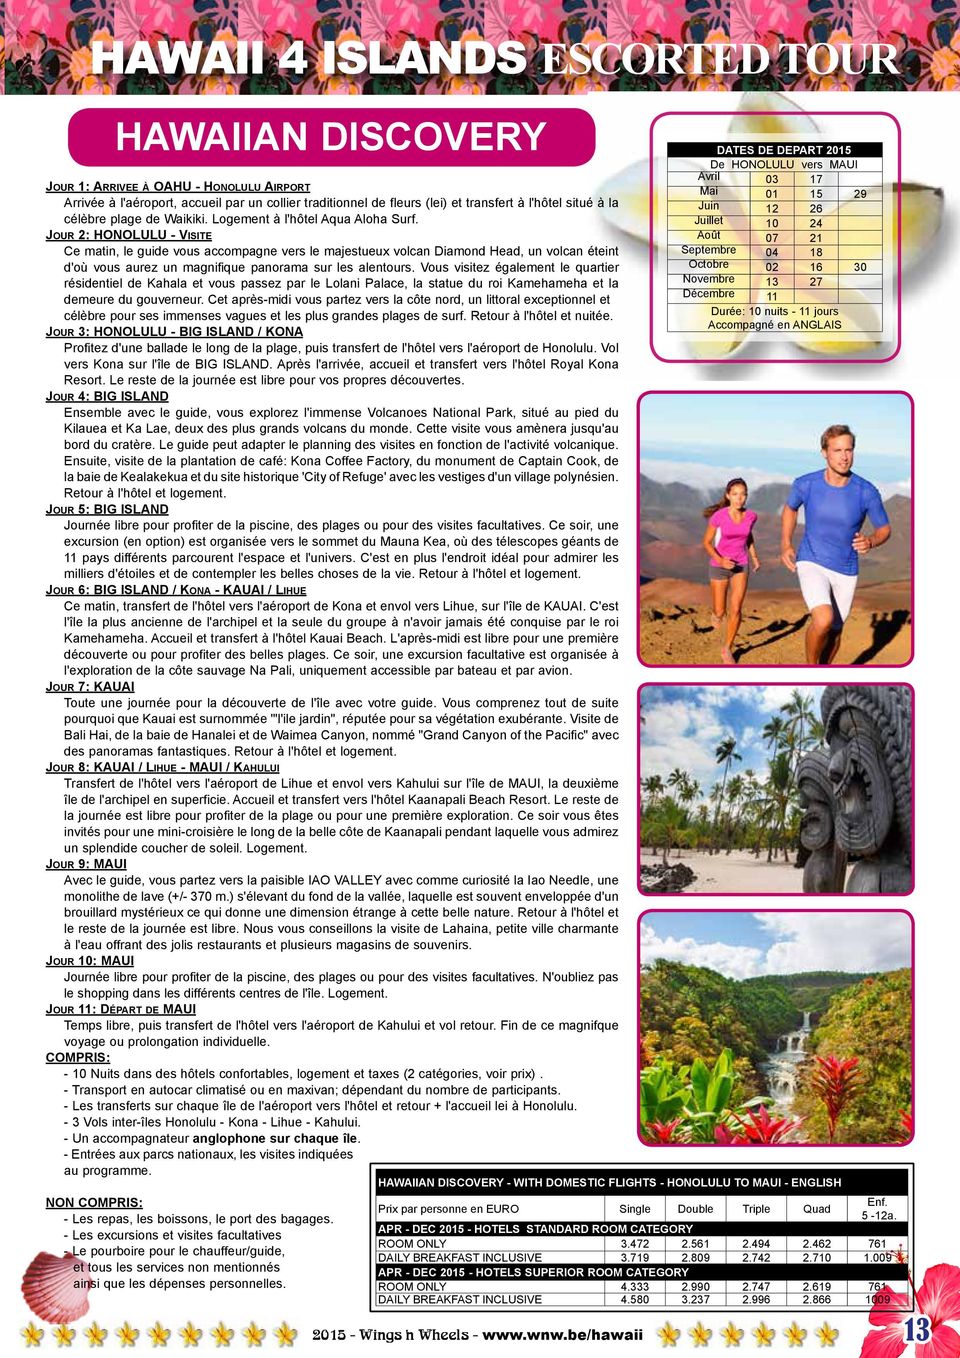 Logement à l'hôtel Aqua Aloha Surf.